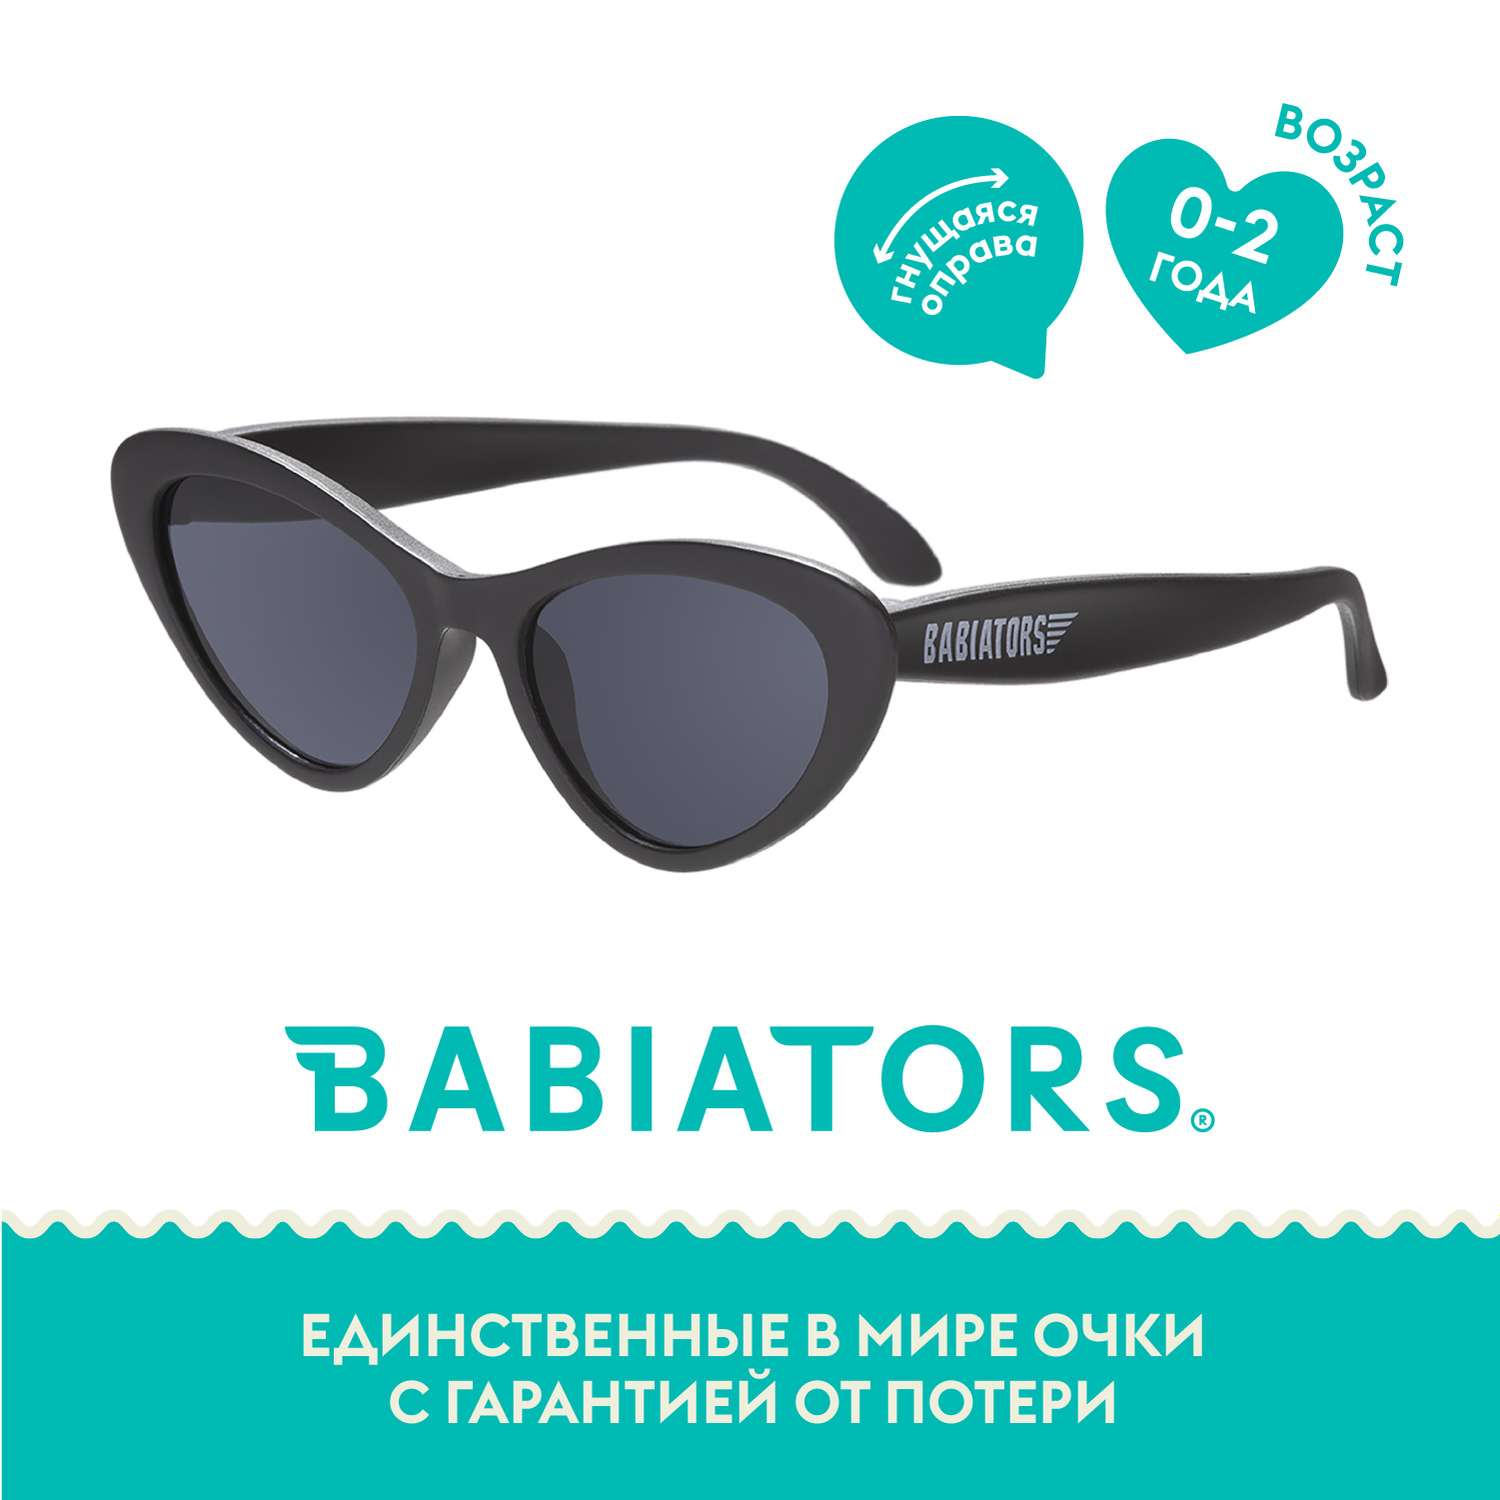 Солнцезащитные очки Babiators Original Cat-Eye Чёрный спецназ 0-2 CAT-004 - фото 1